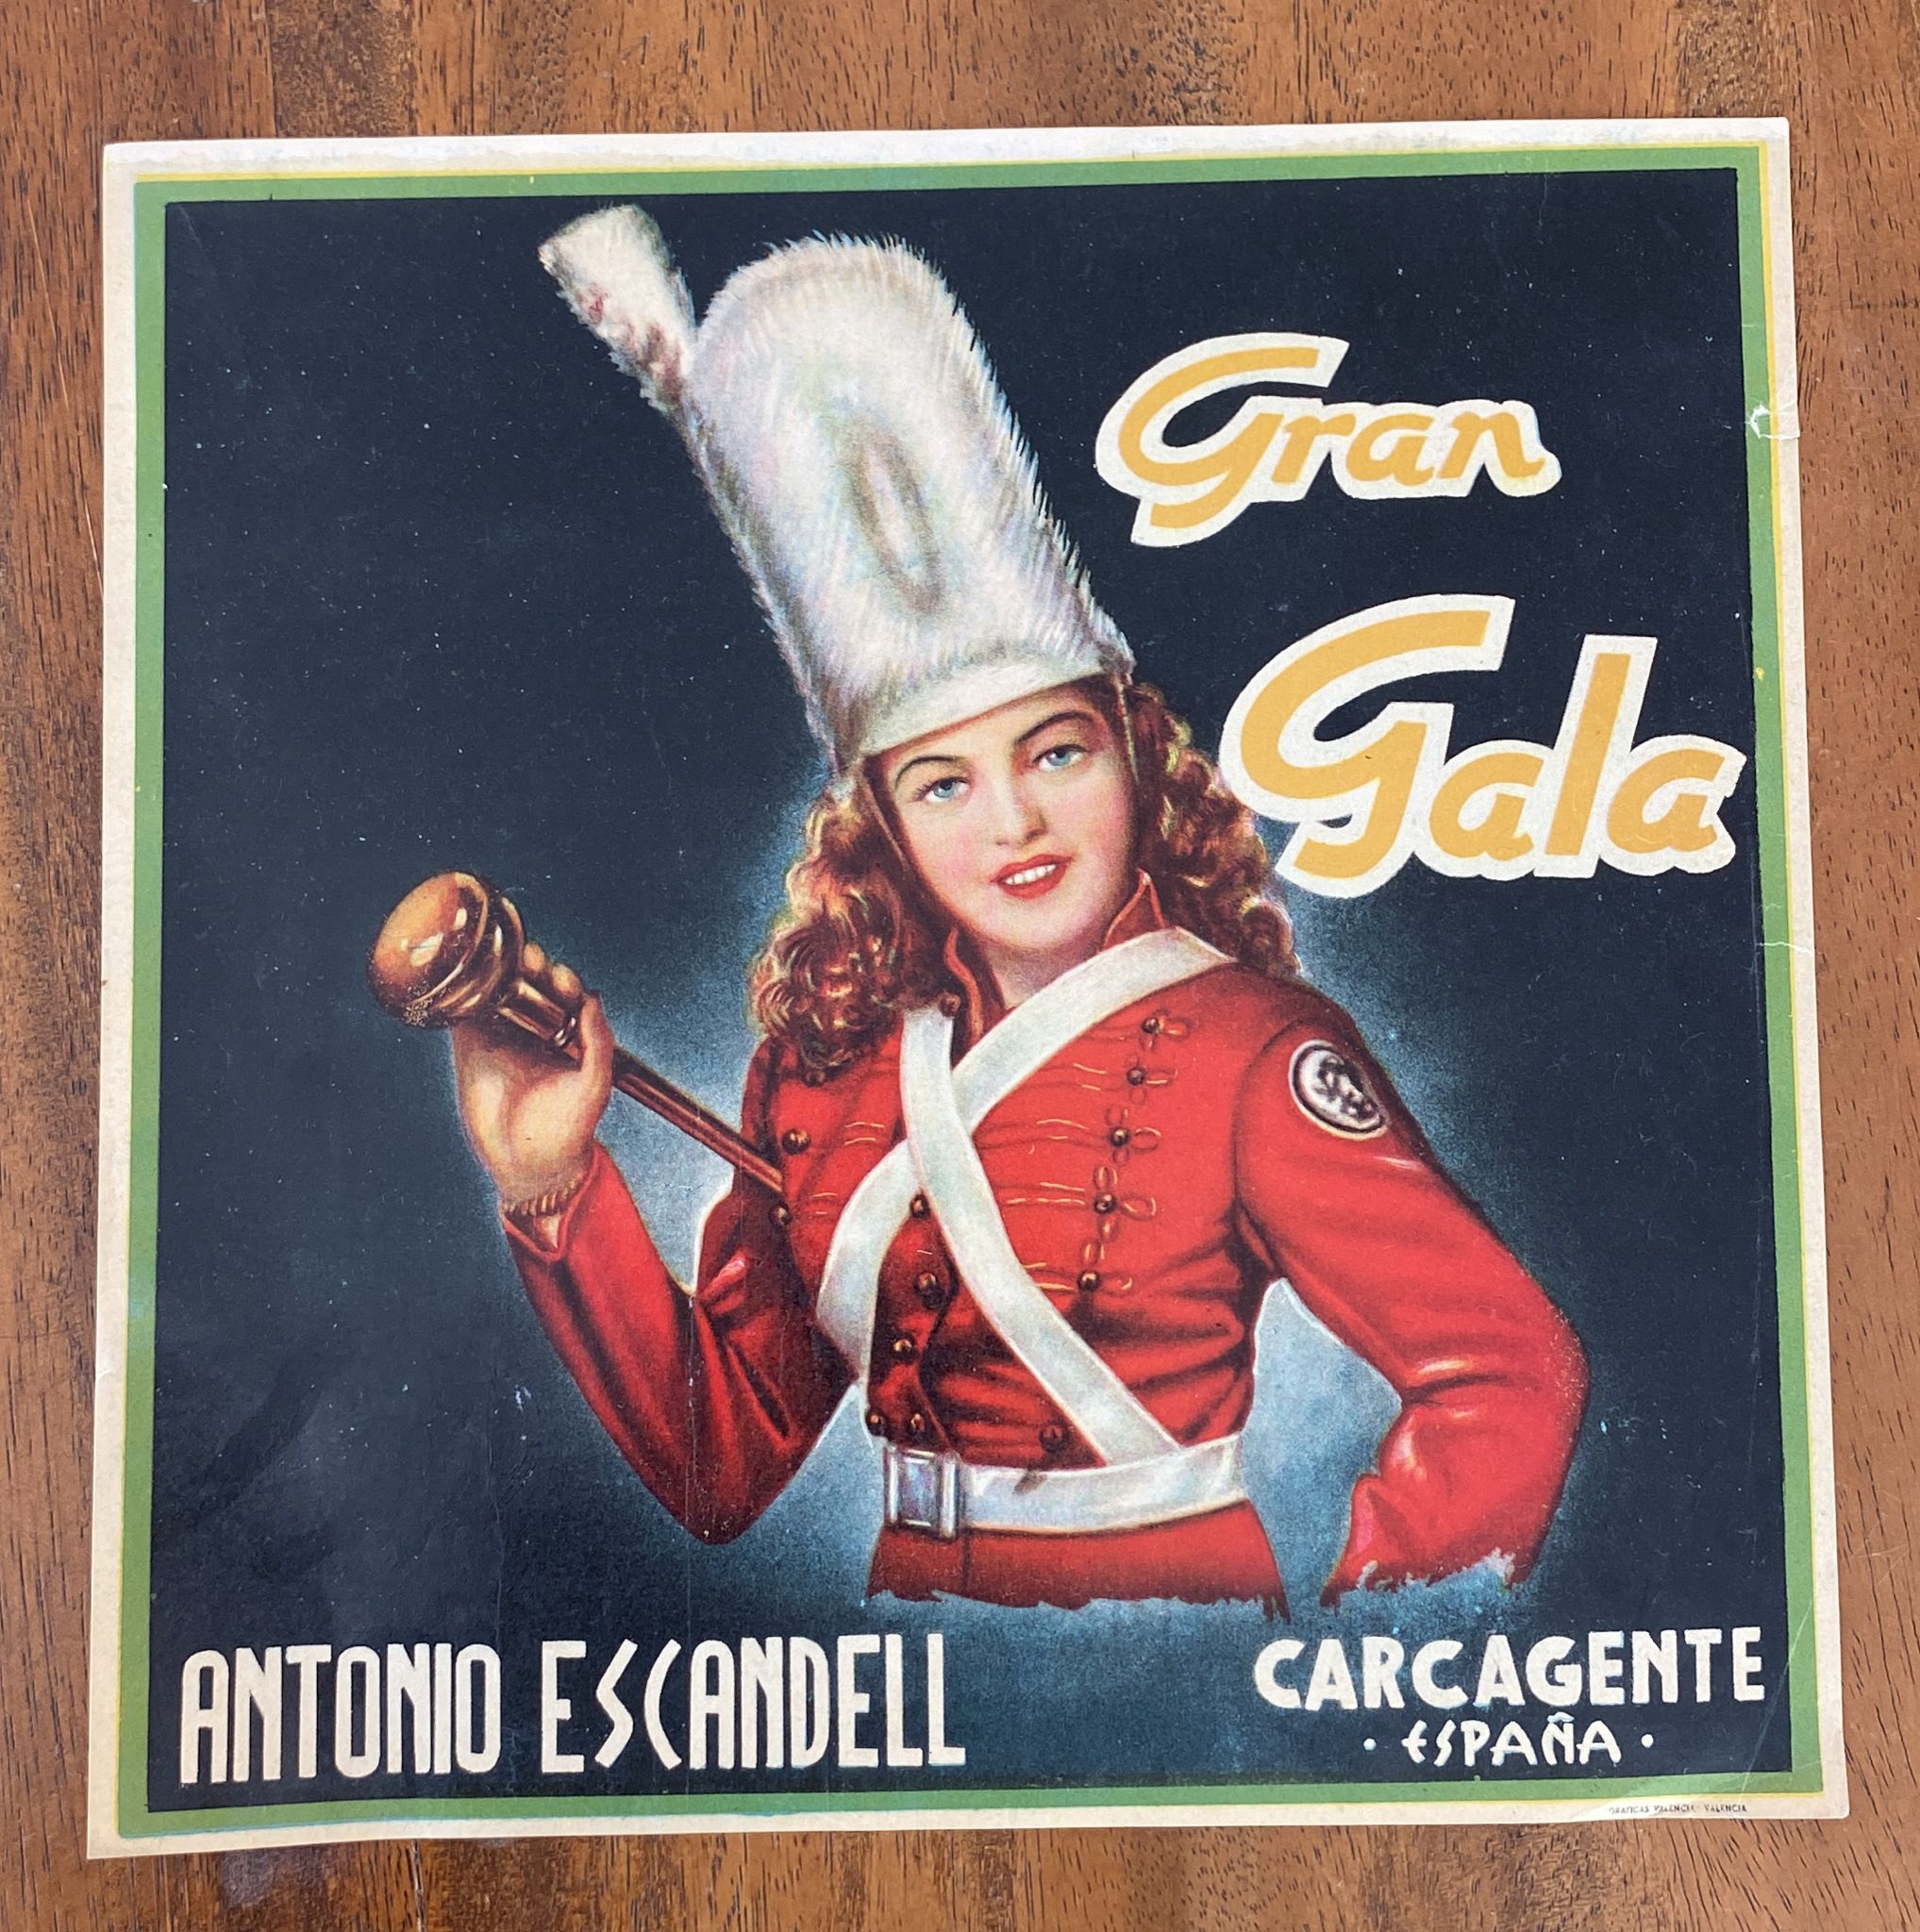 Gran Gala. Etiqueta (25x25 cms.) Antonio Escandel. Carcagente